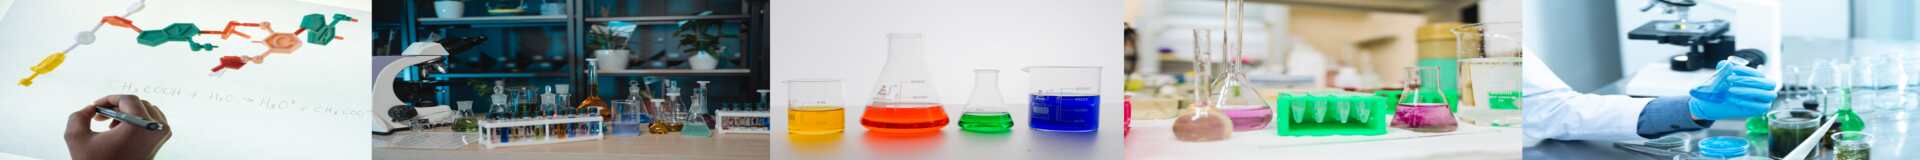 International Oman chemicals tenders